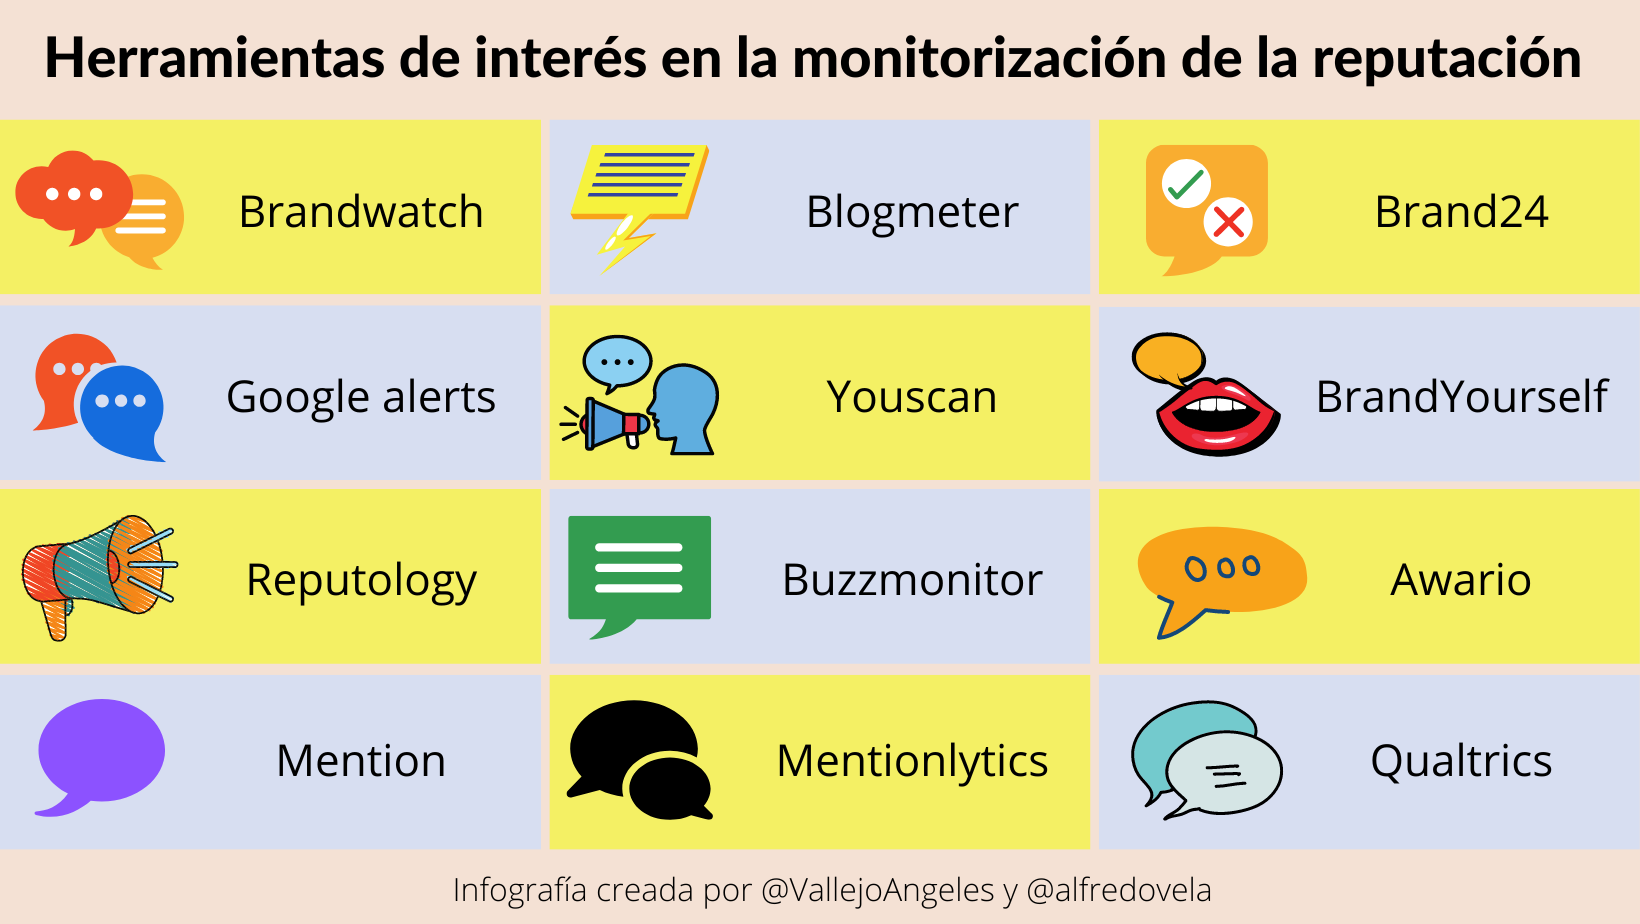 Herramientas para monitorizar la reputación de la empresa #infografia #marketing #rrhh #comunicación